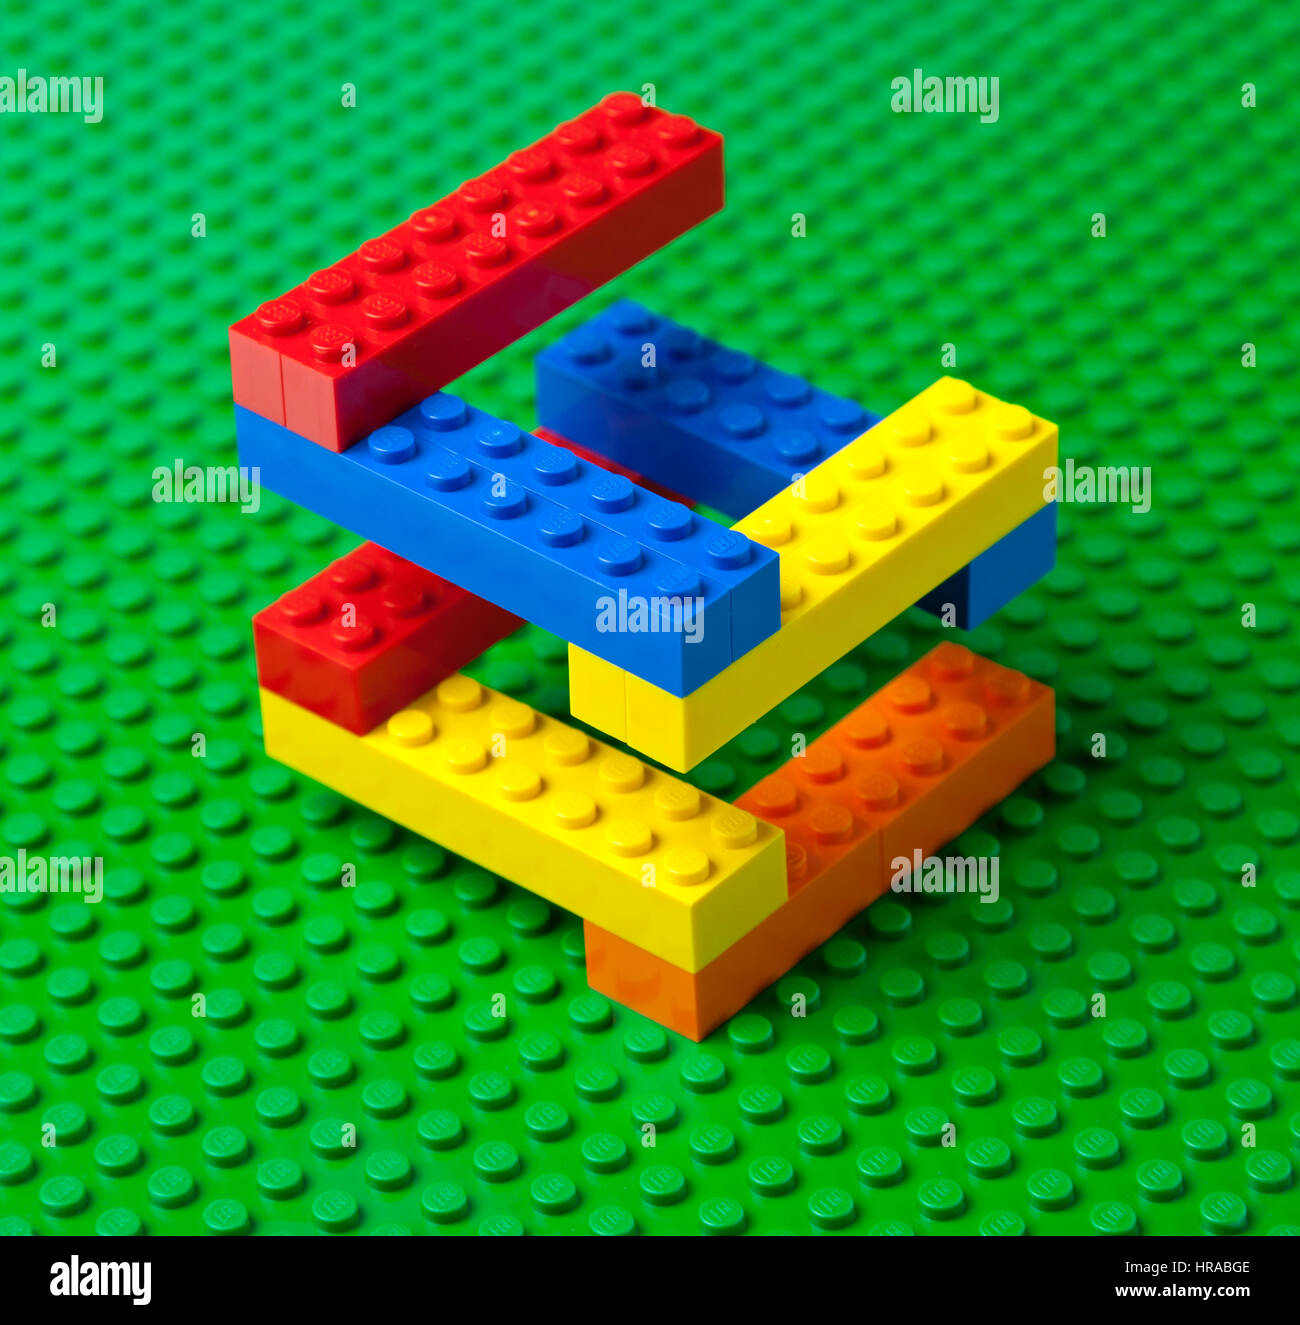 Construction en brique Lego colorés ou escalier sur une plaque de base Lego vert. Banque D'Images